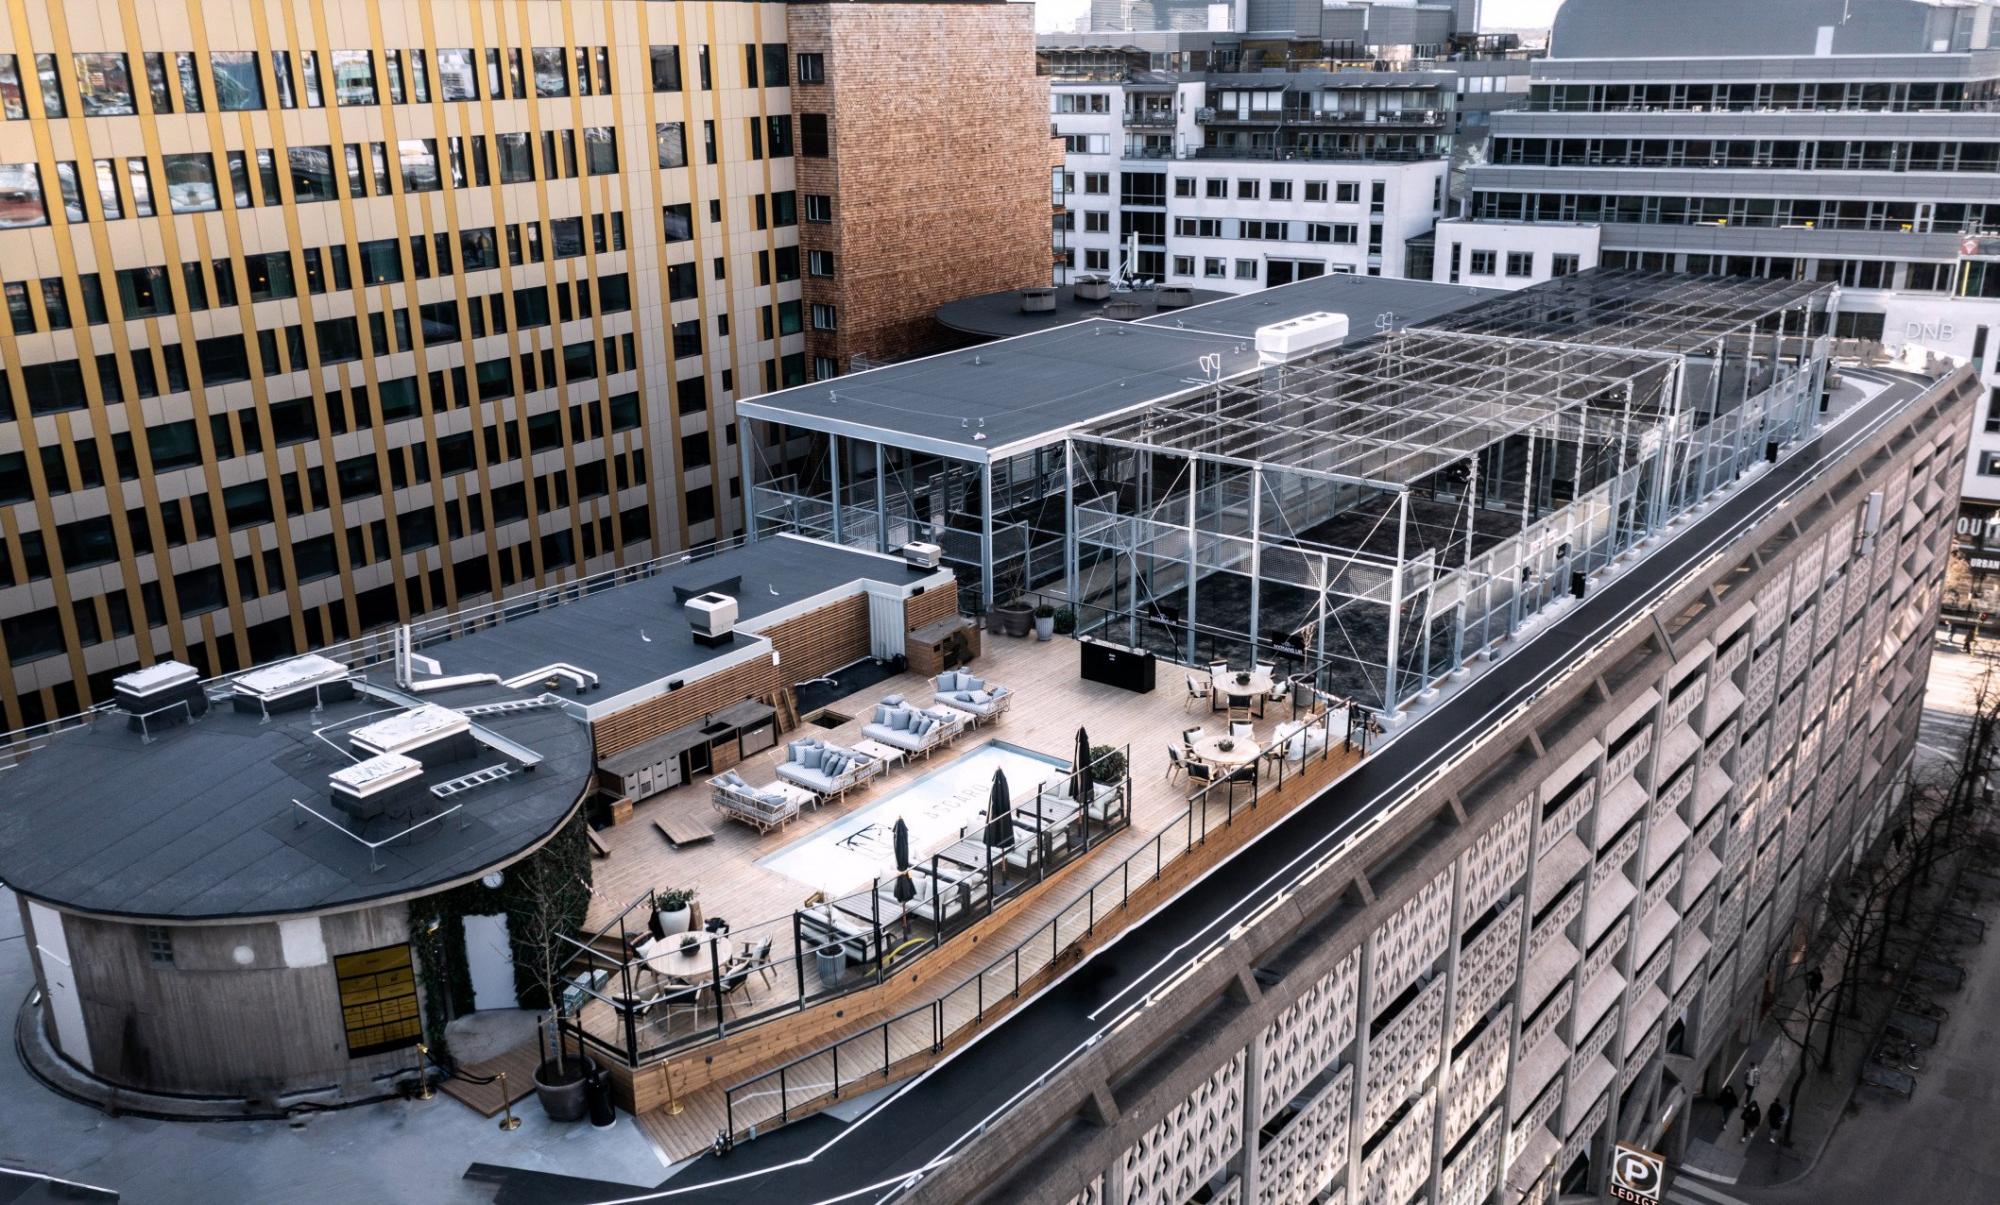 Rooftop i city satsar på dj:s, house och dans – "dessutom ligger vi lite gömt"